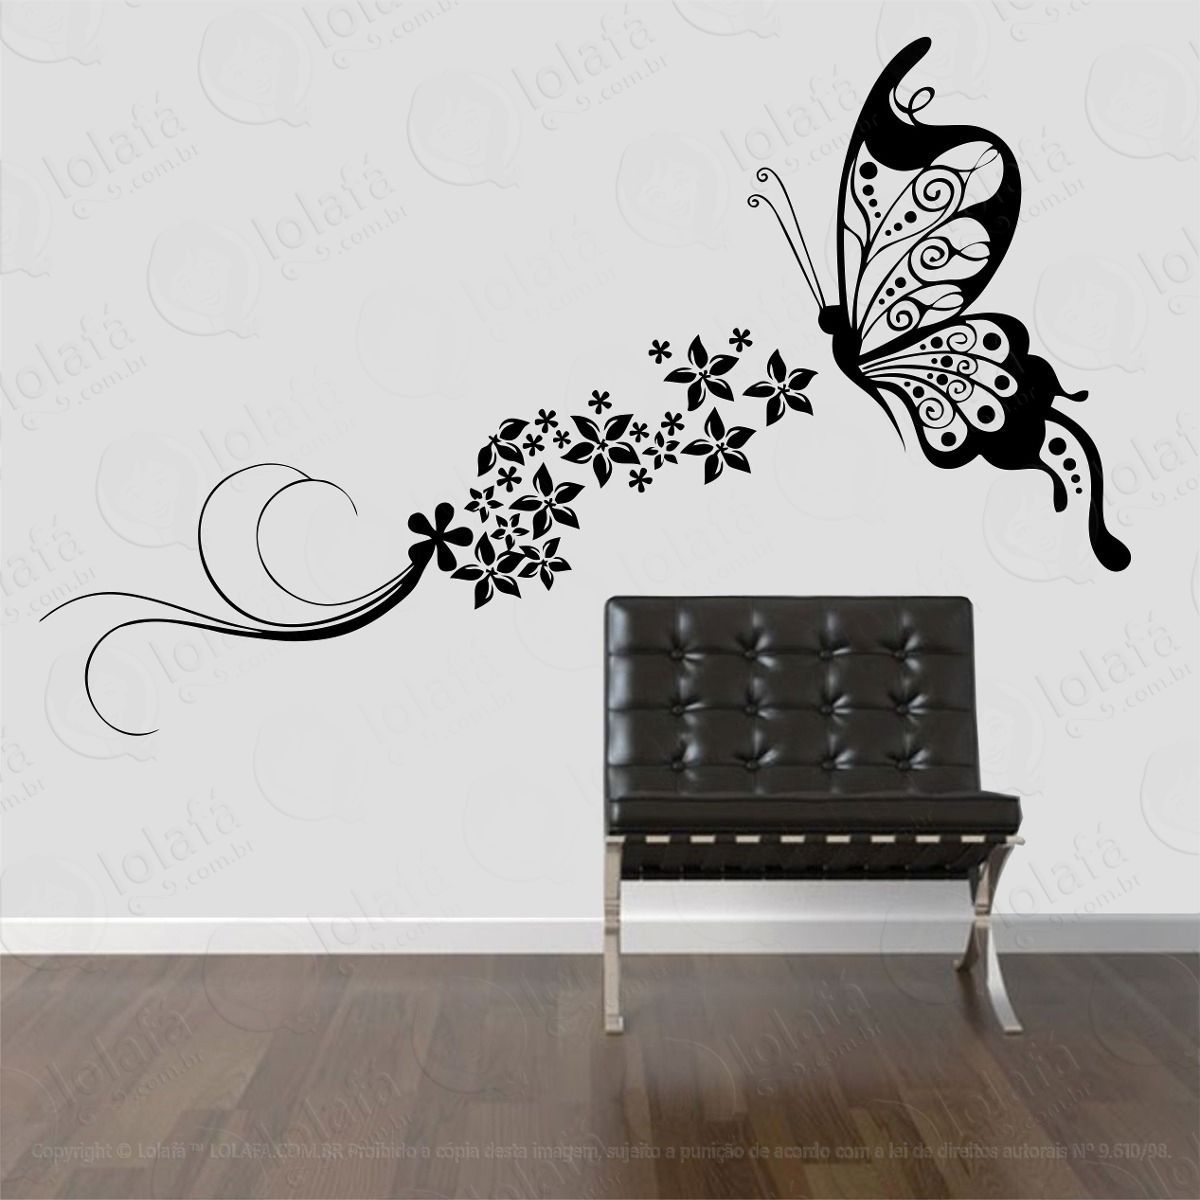 adesivo decorativo parede borboleta floral flores faixa mod:662